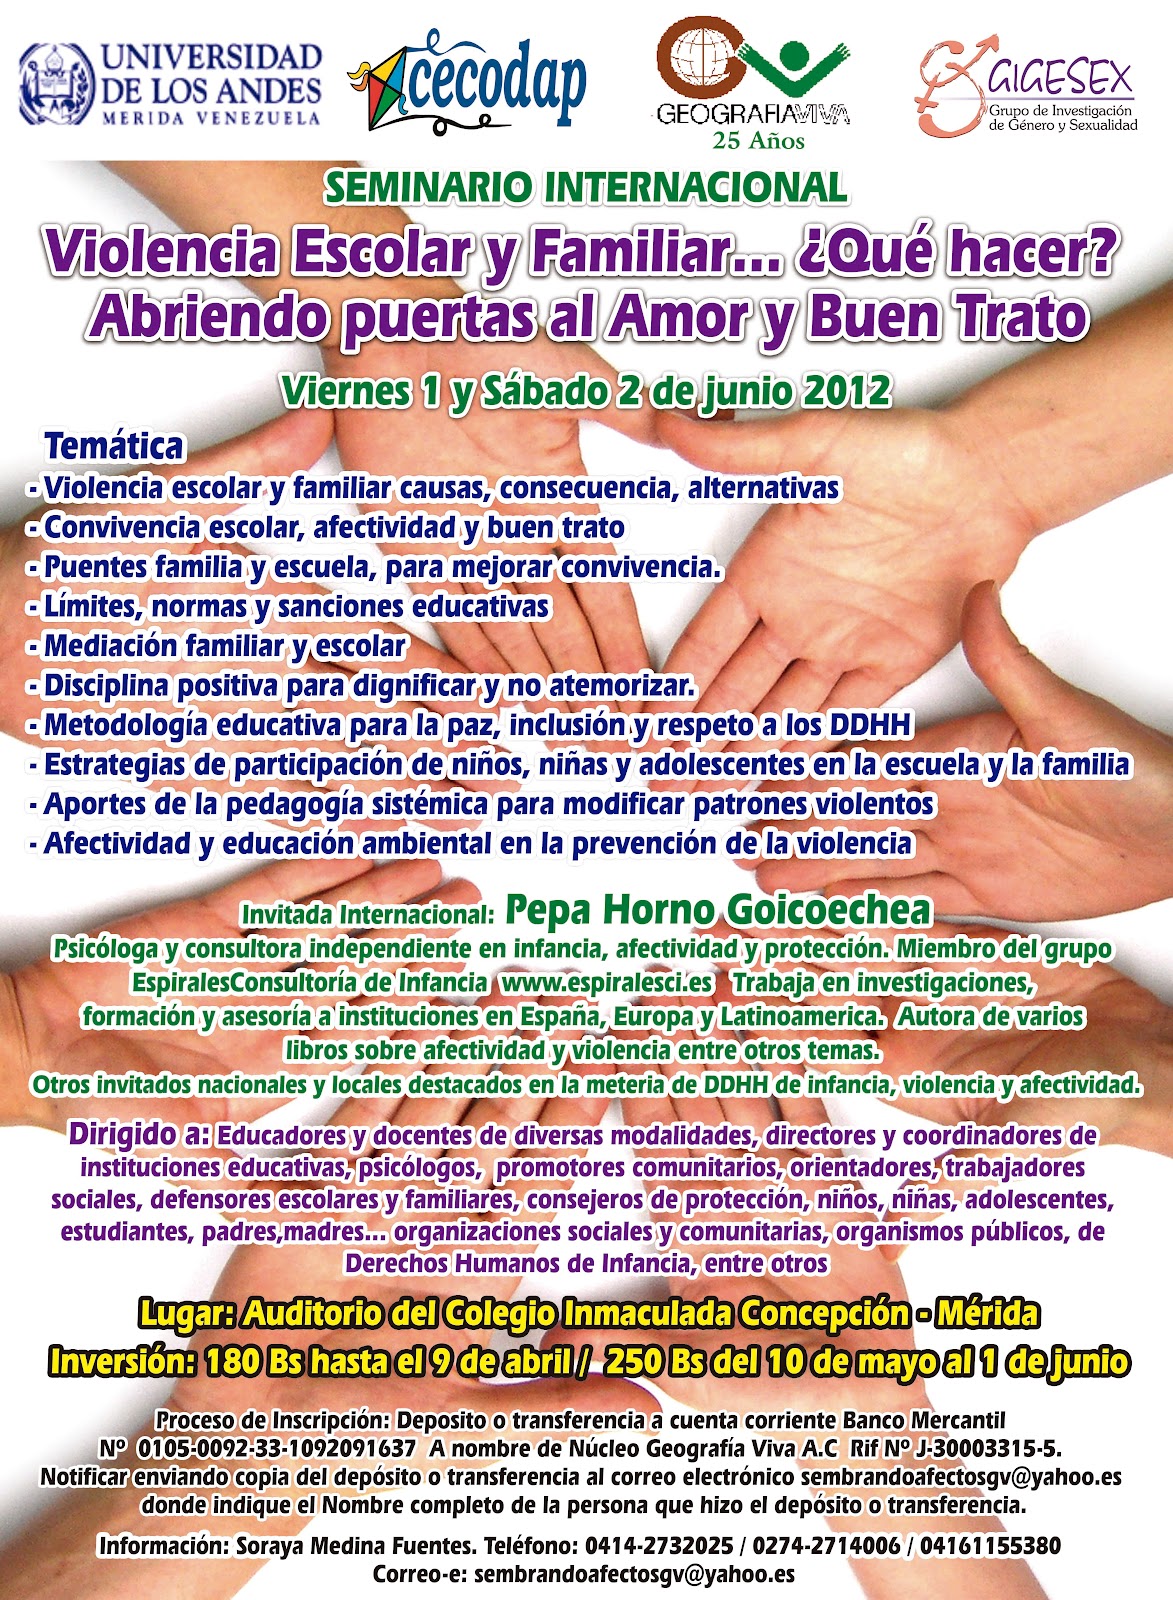 Seminario Internacional Violencia escolar y familiar... ¿Qué hacer? Abriendo las puertas al amor y buen trato. 1 y 2 de Junio de 2012